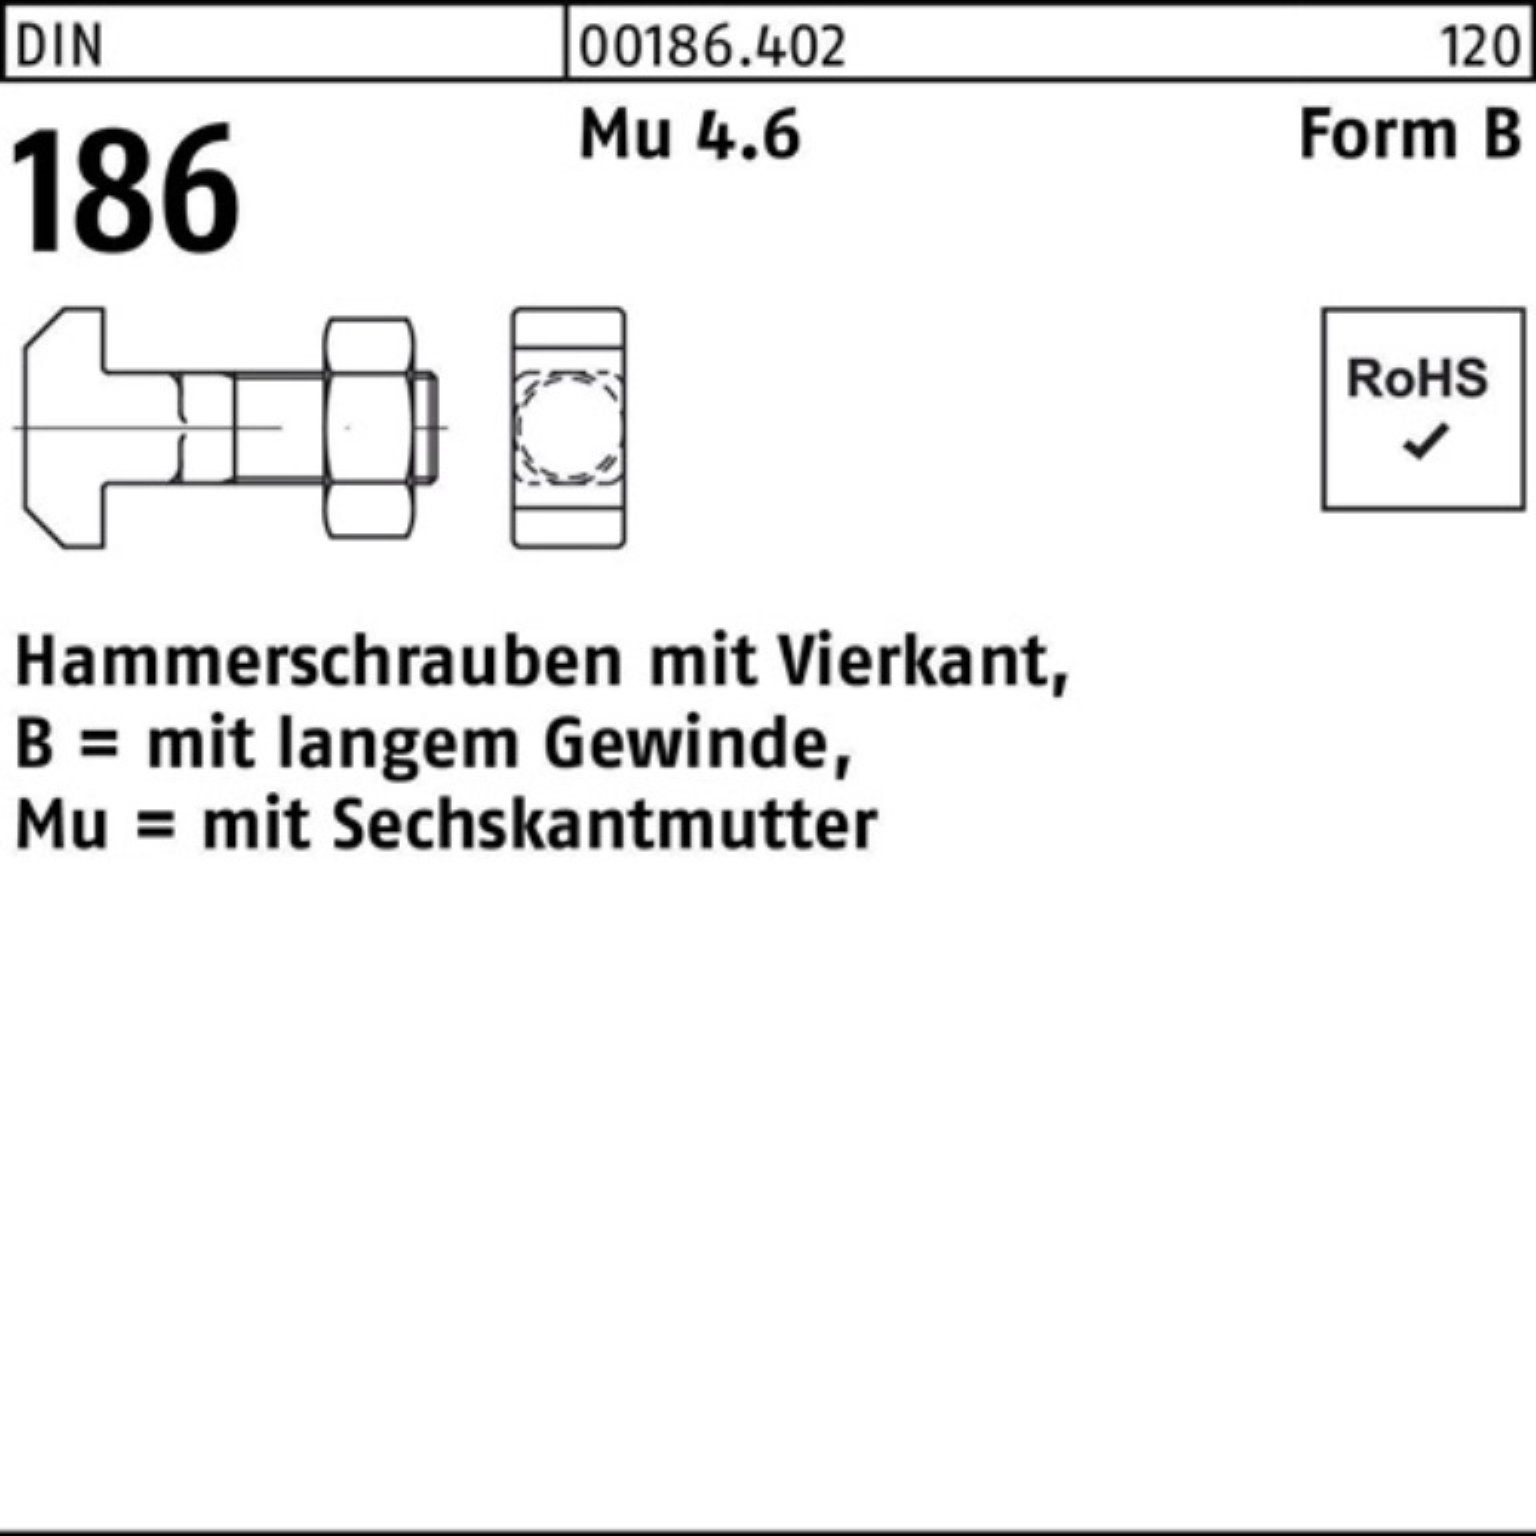 6-ktmutter Pack Hammerschraube DIN BM 100er 24x FormB Reyher 160 Schraube 186 Vierkant